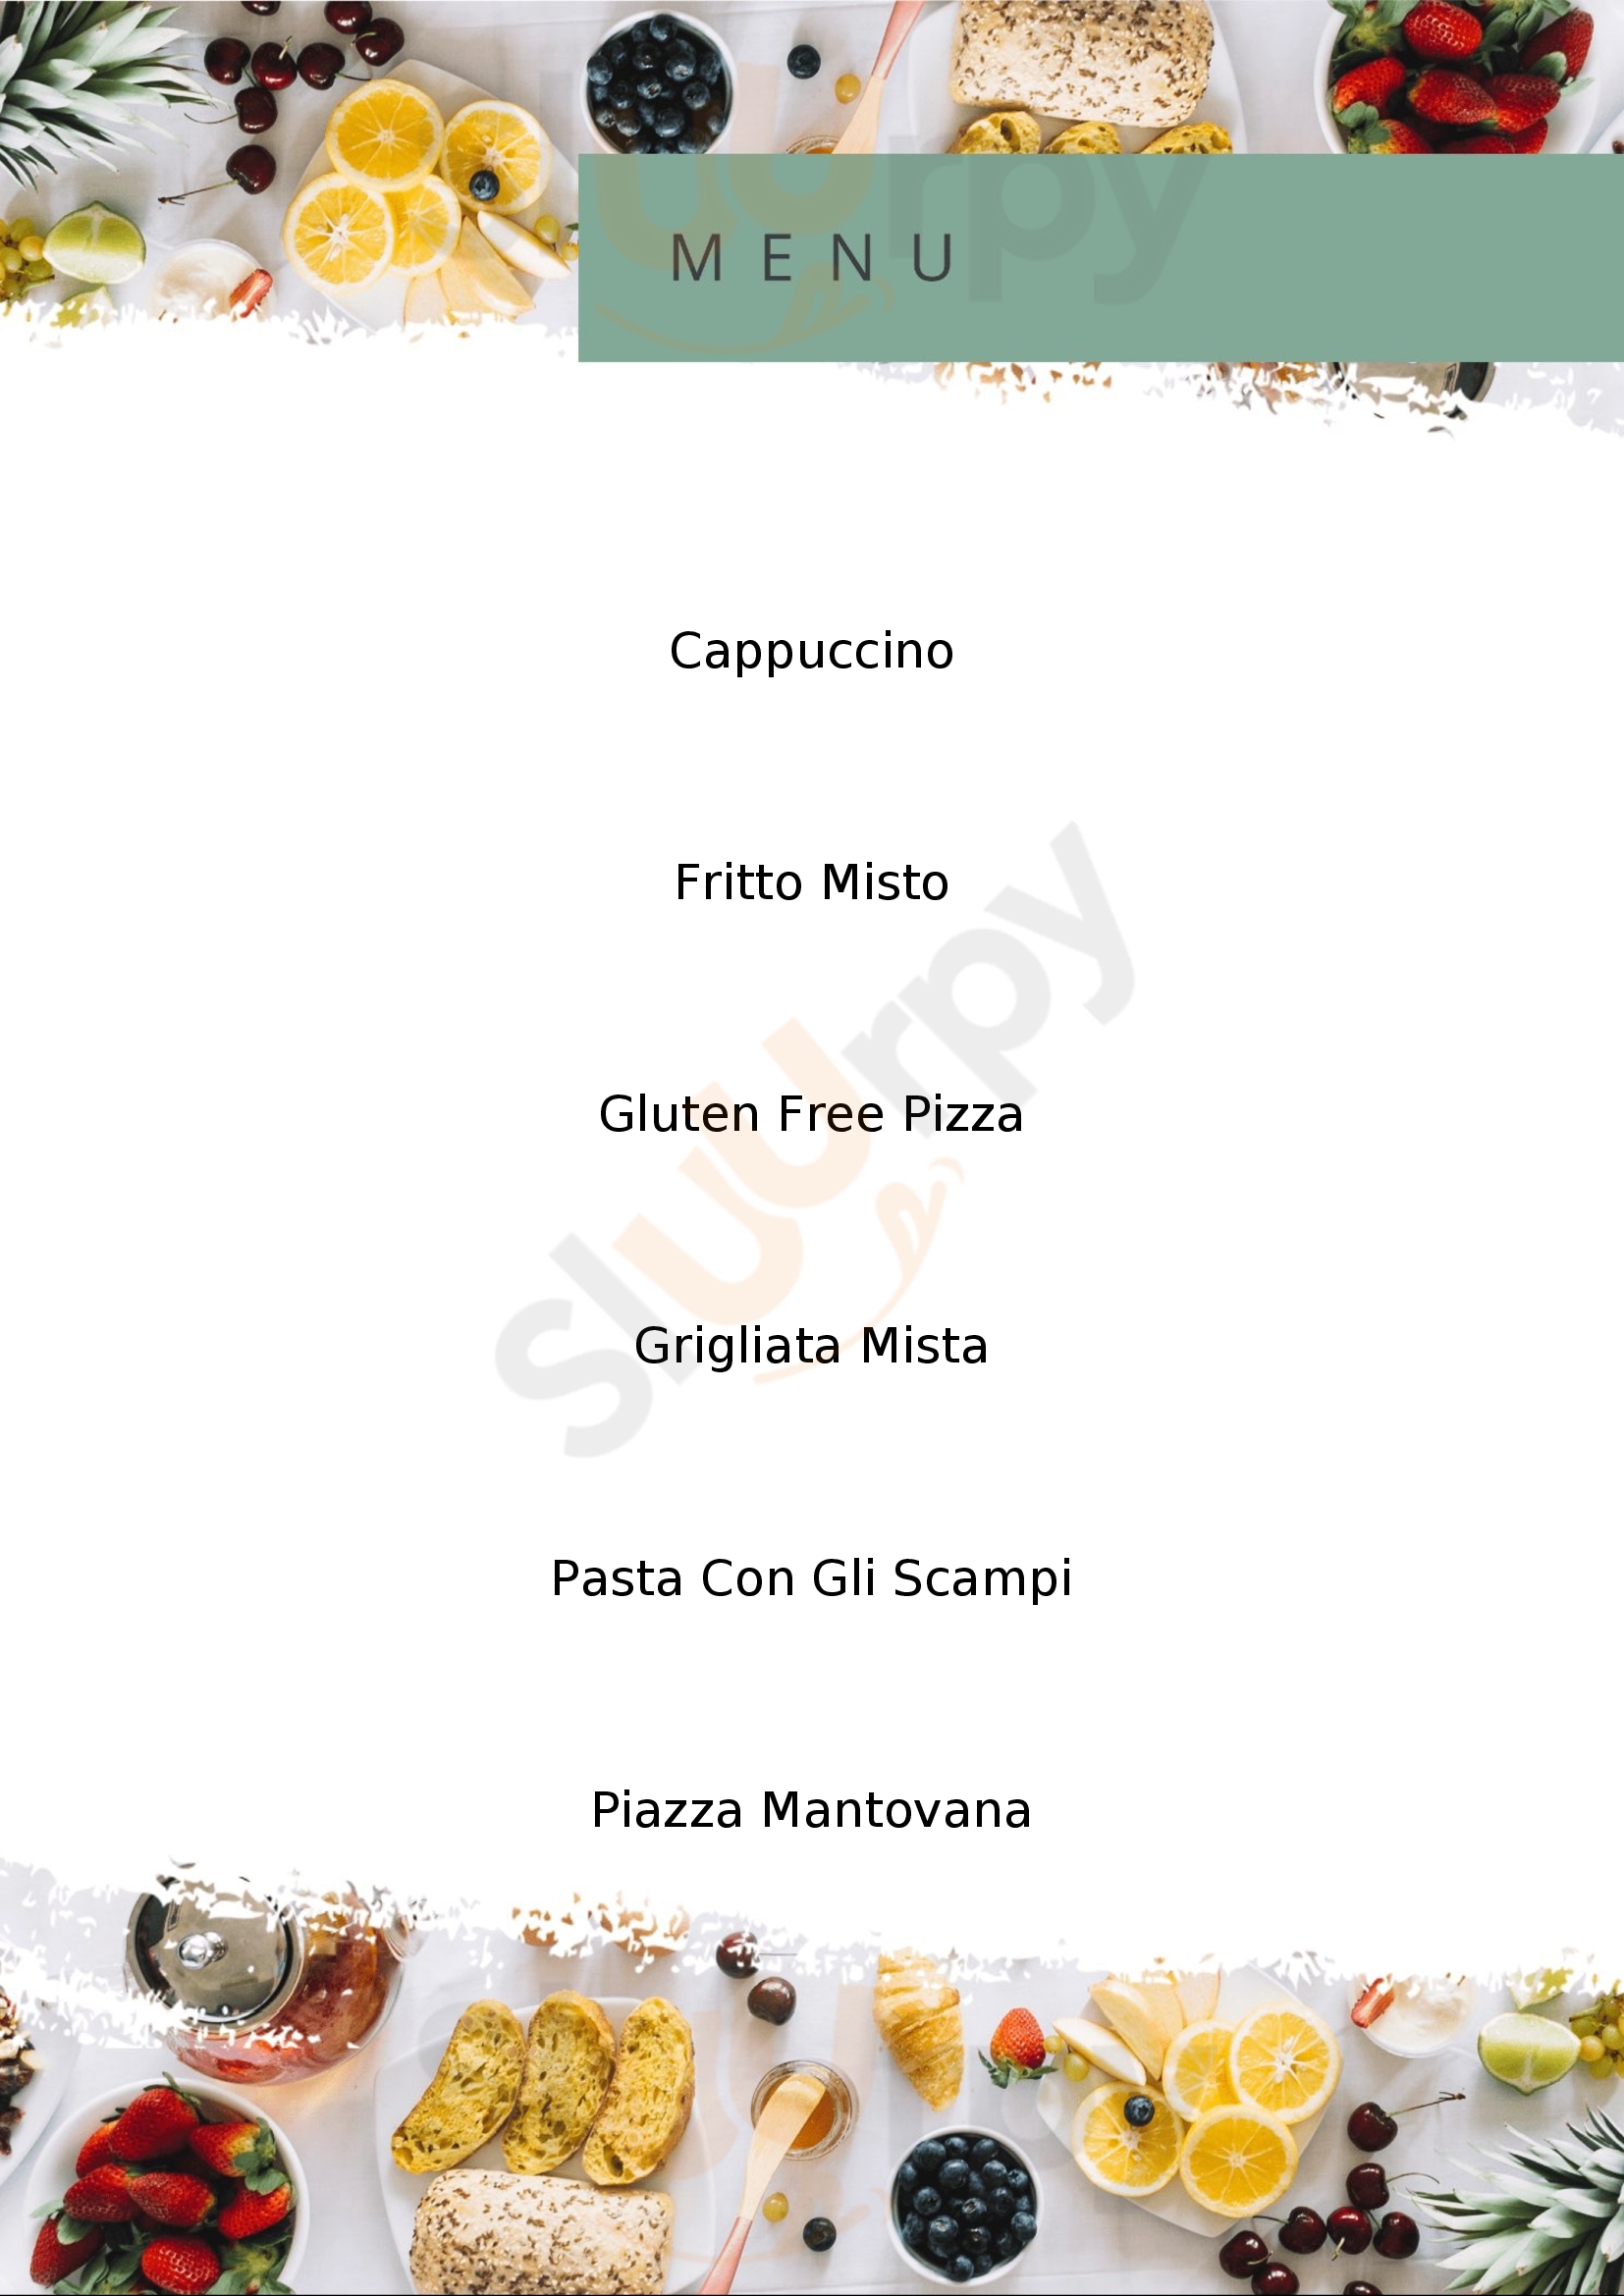 Pizzeria La Mamma Mantova menù 1 pagina